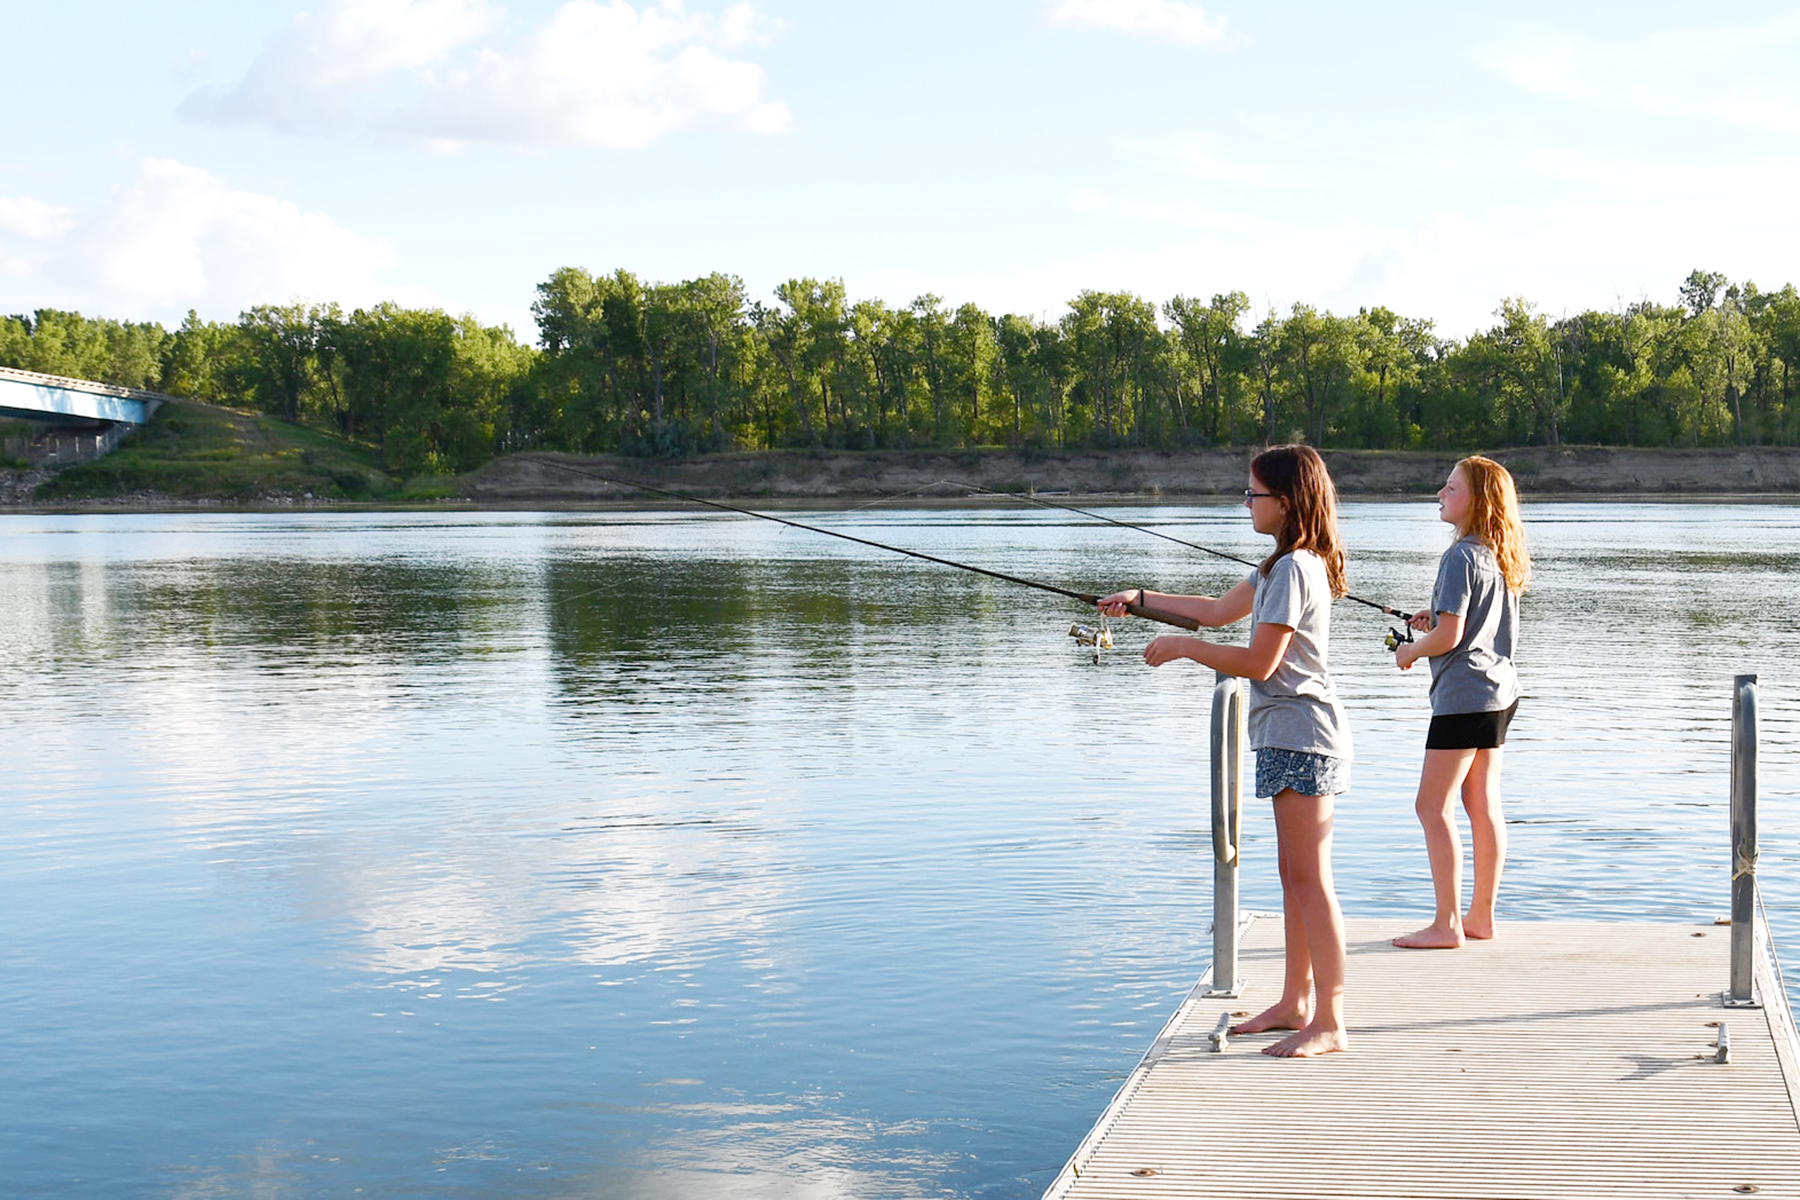 Fishing along the Missouri River near Washburn ND